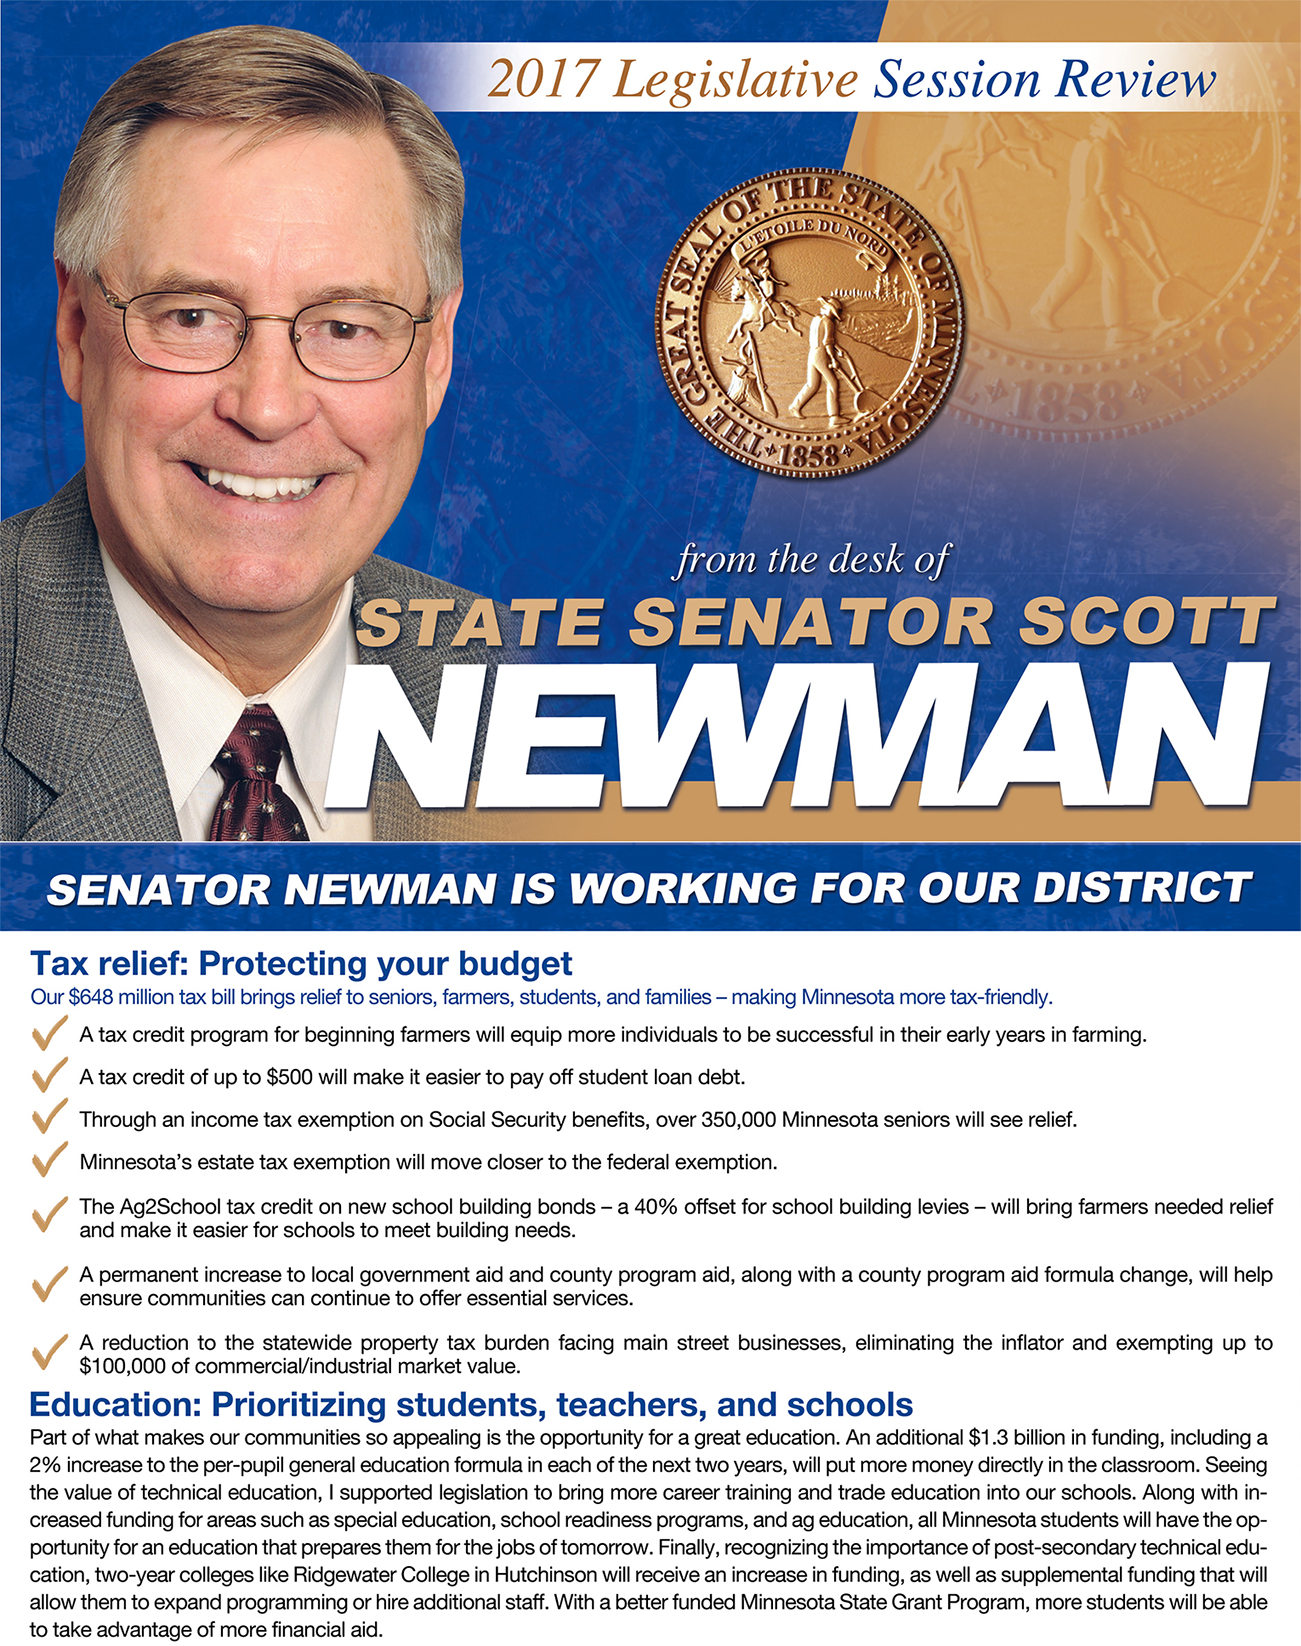 2017 legislative review from Sen. Scott Newman